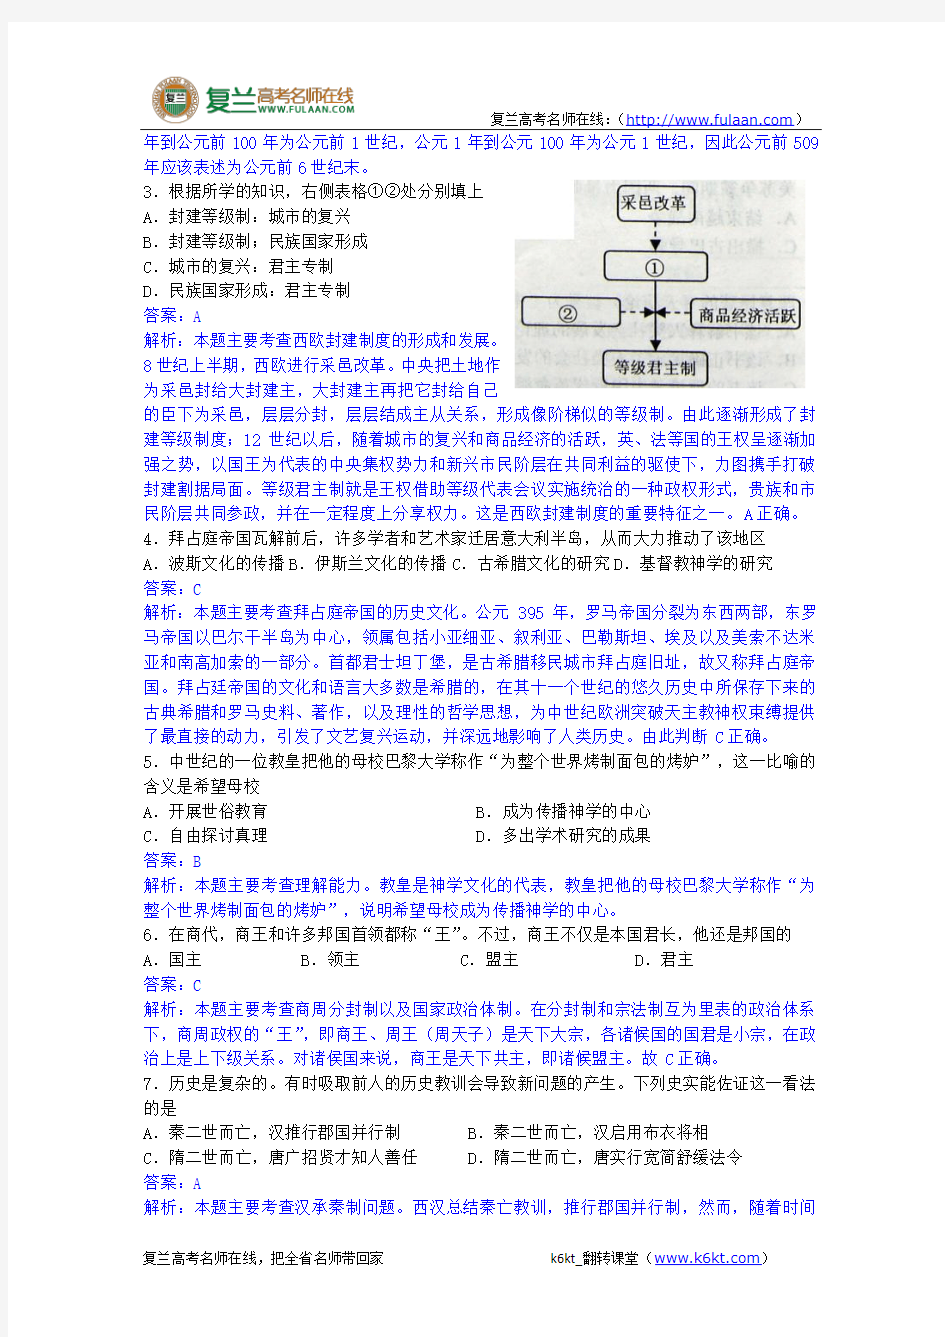 2011年高考试题——历史(上海卷)-复兰高考名师在线精编解析版